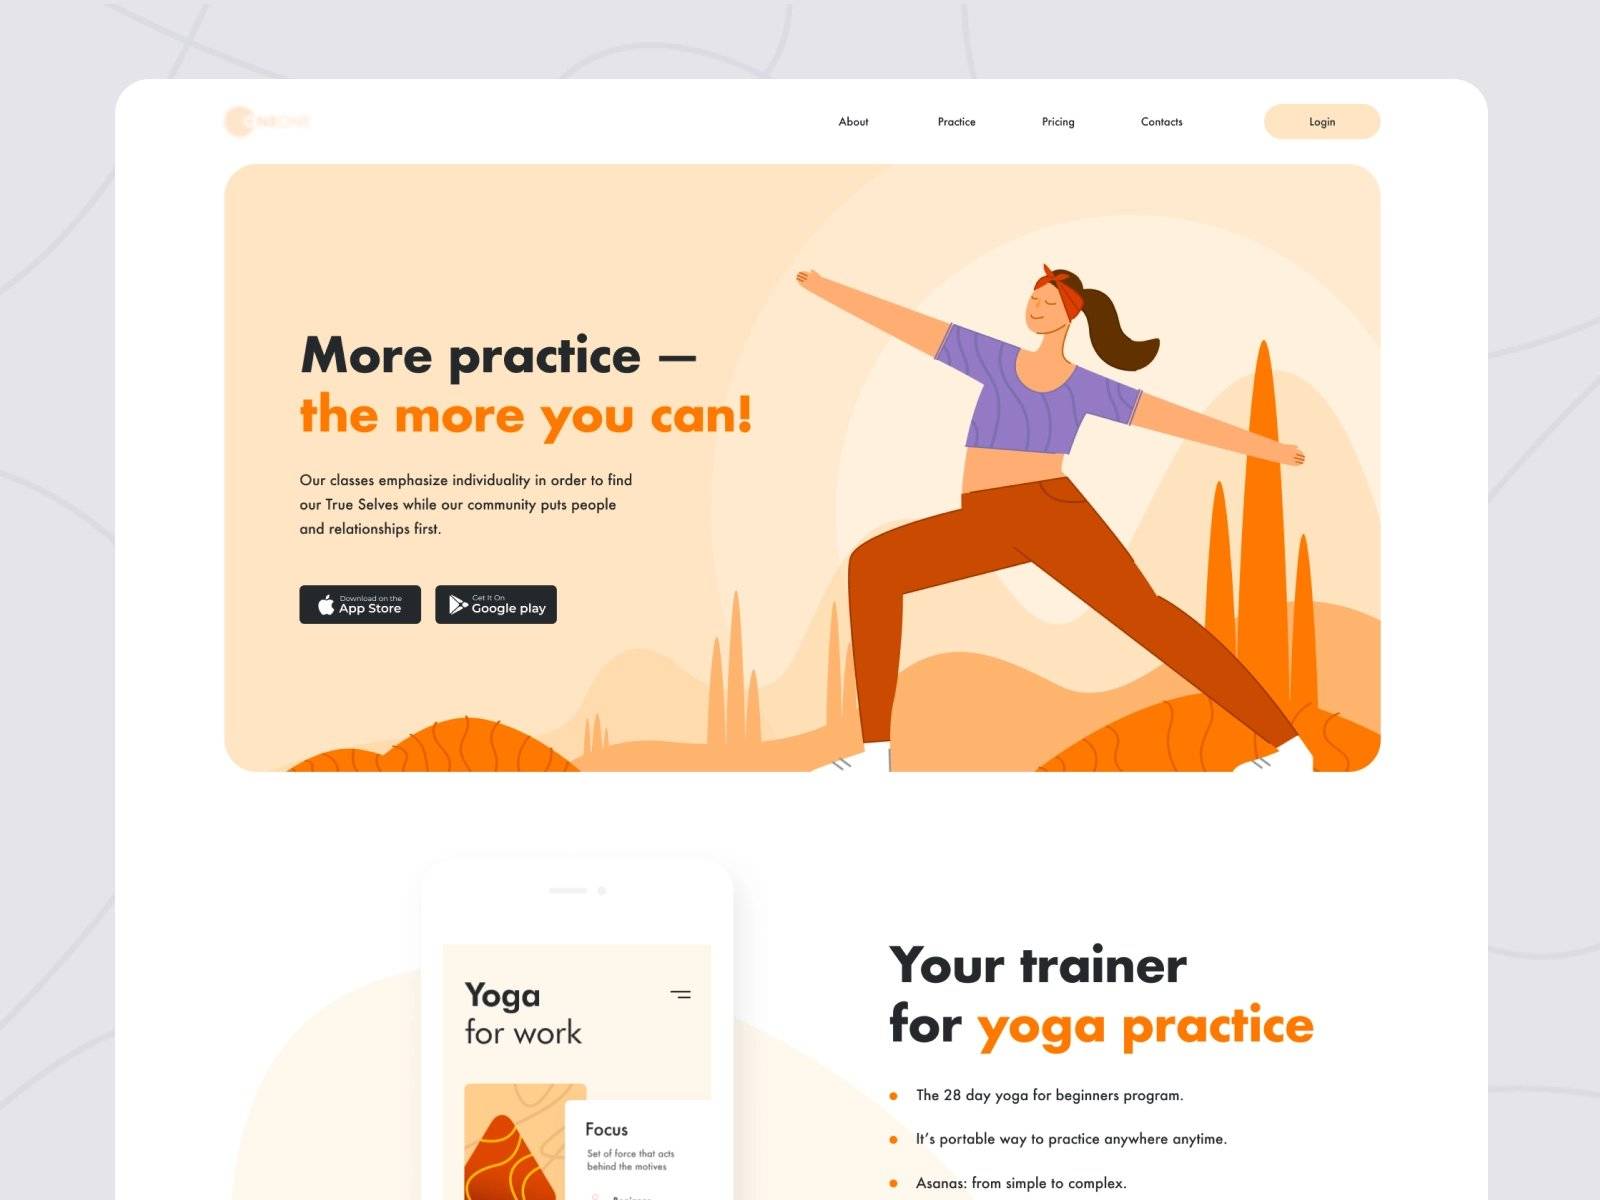 梵我合一！12款瑜伽运动健身类WEB界面设计灵感